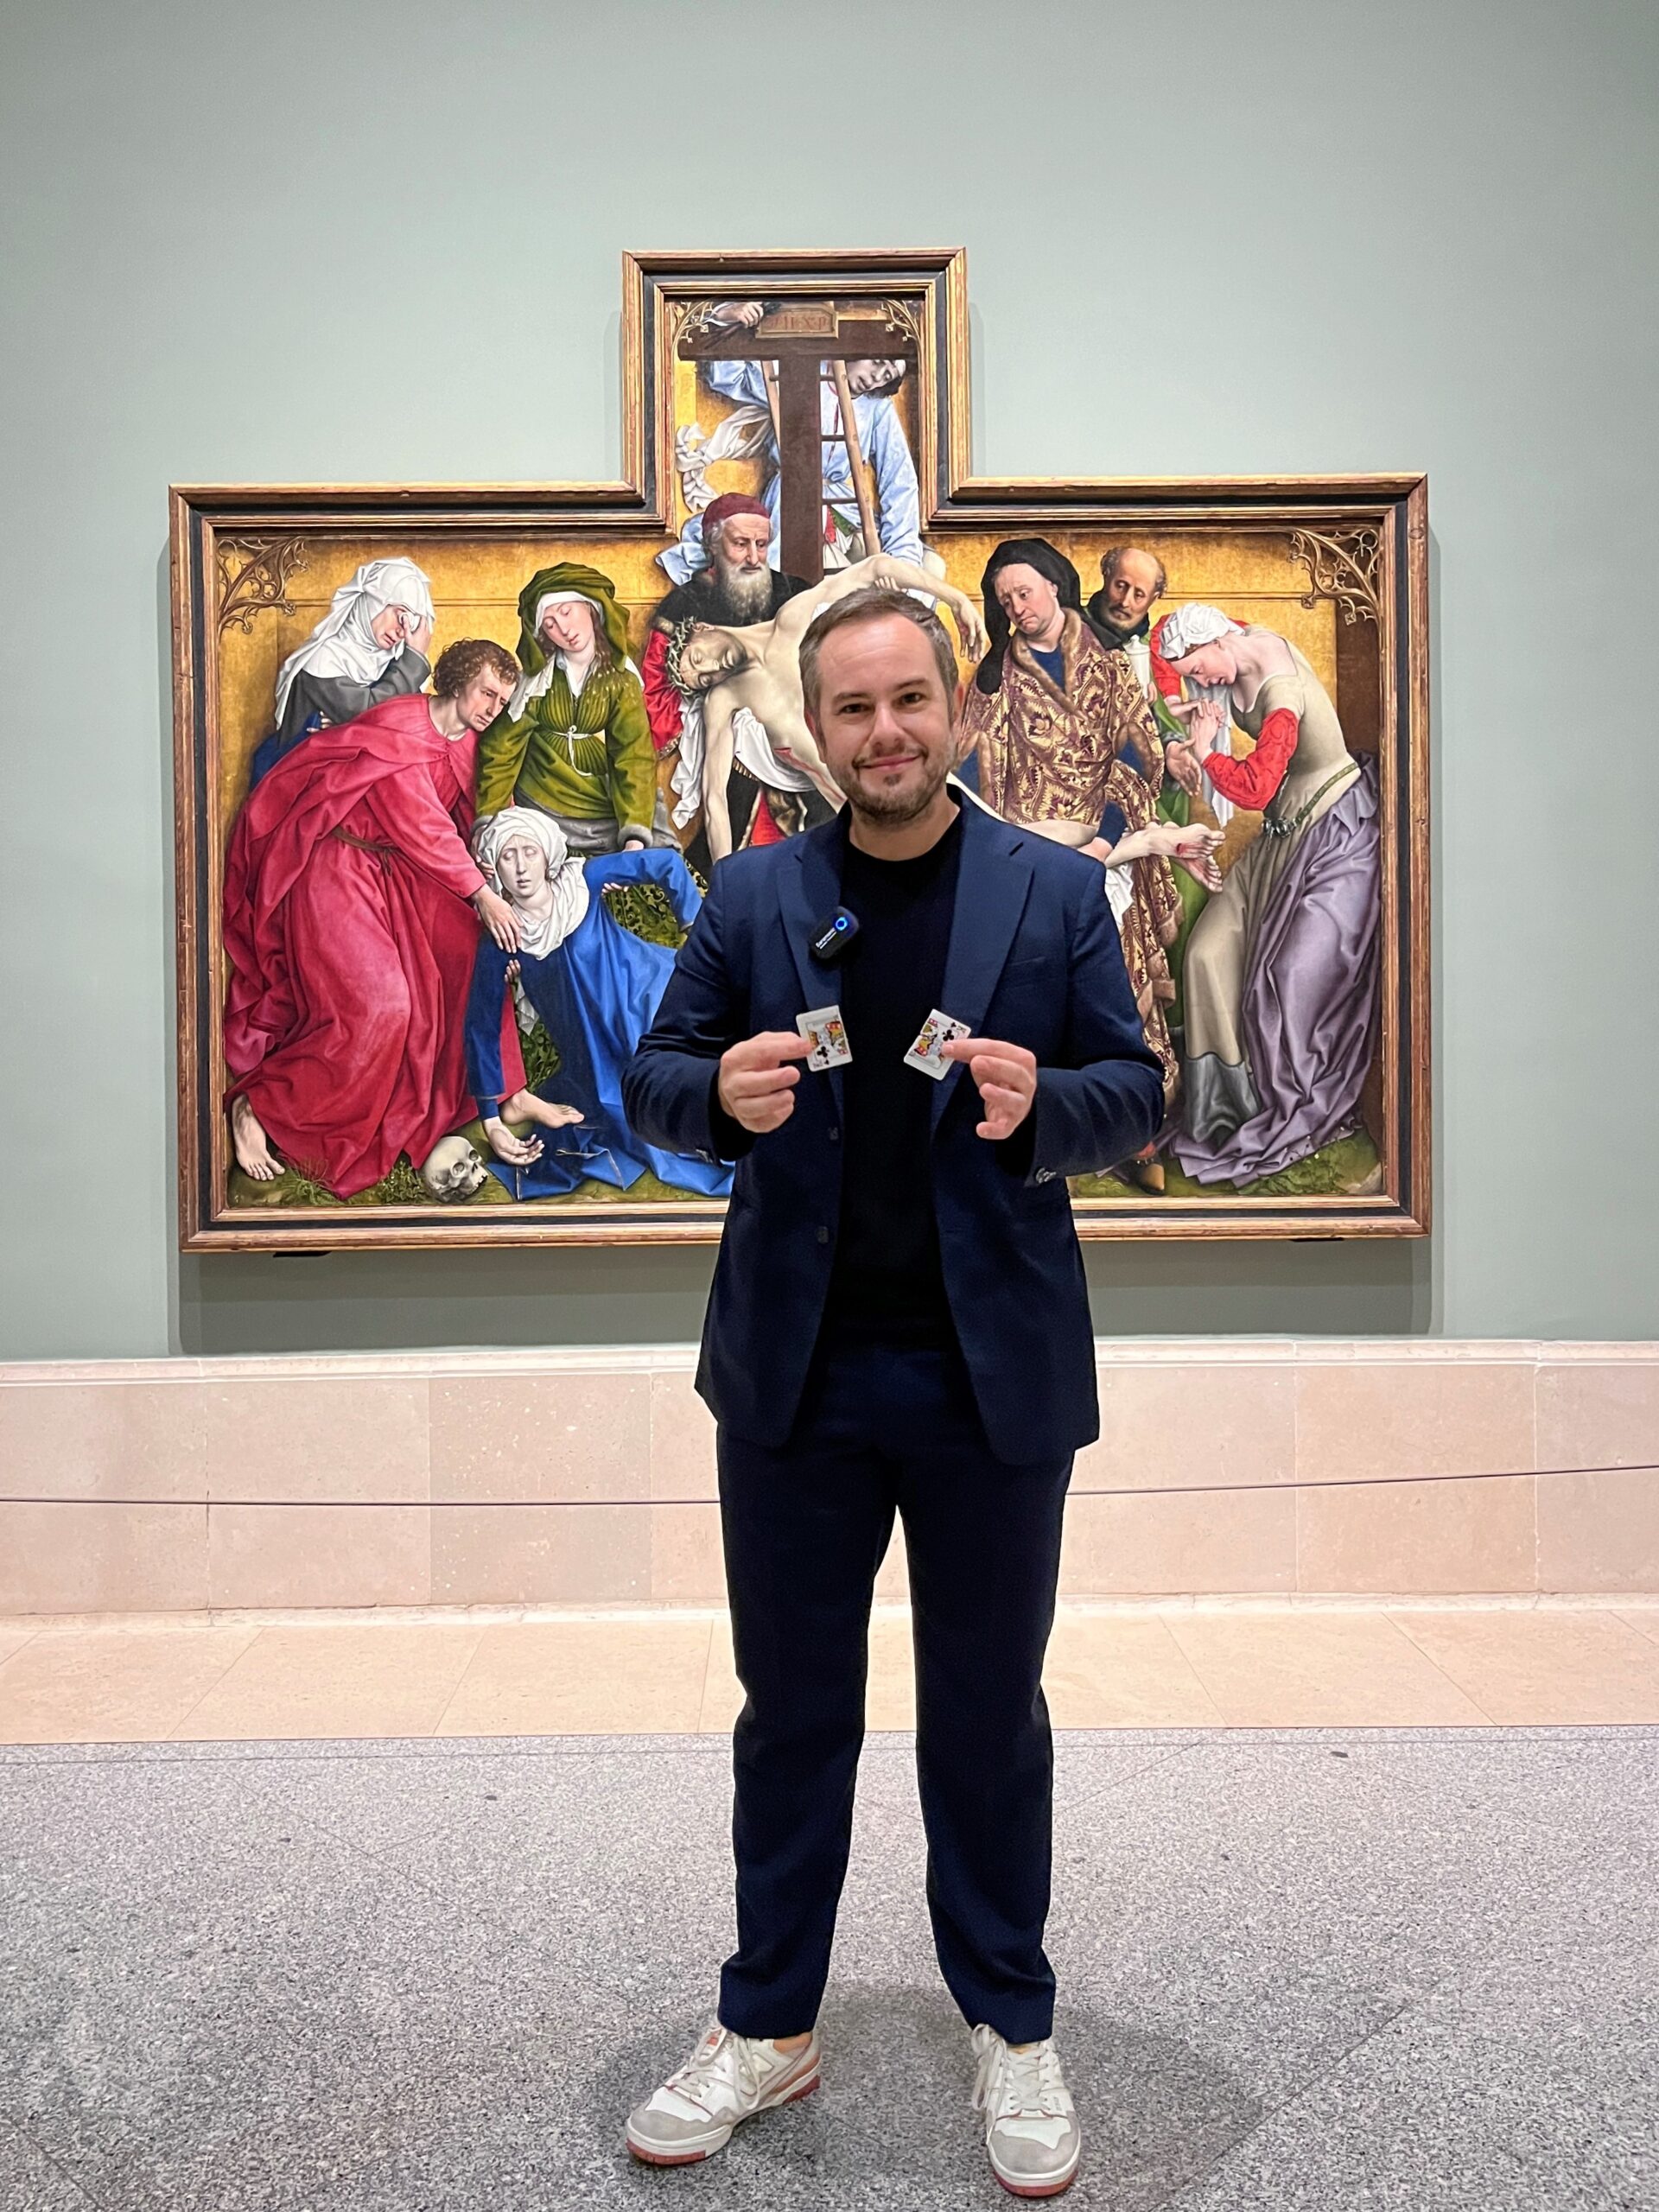 Este domingo, el Museo del Prado se va a llenar de magia con Jorge Blass. Y, además, gratis.